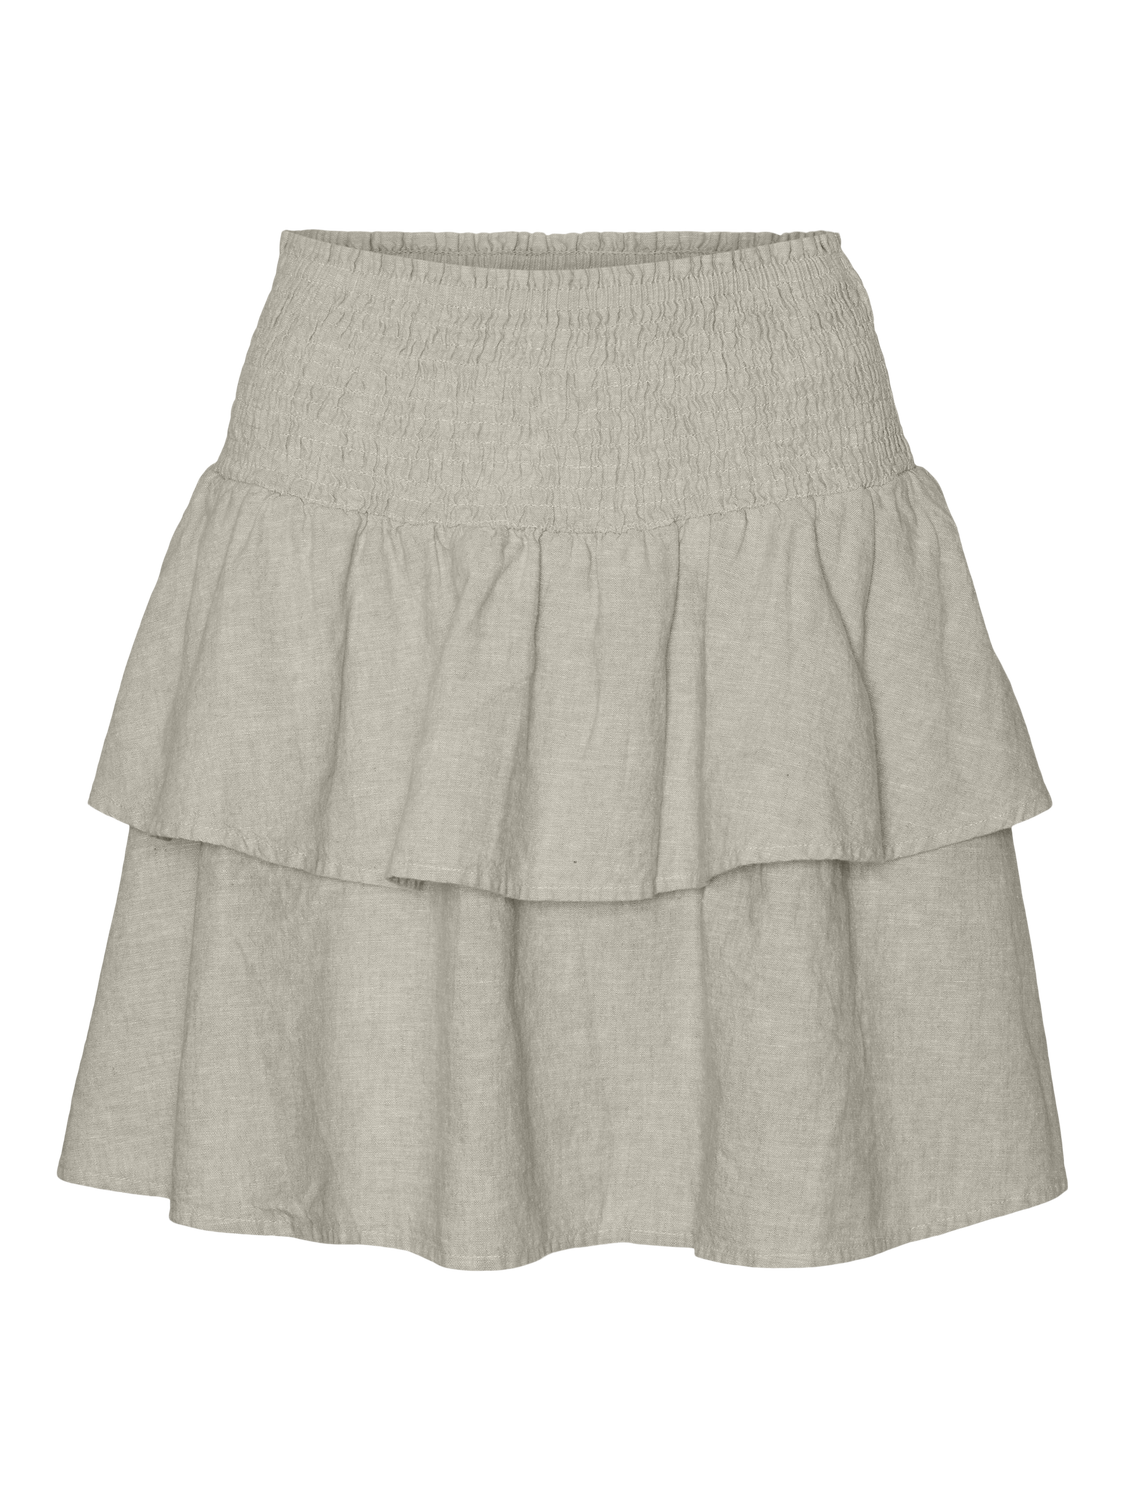 VMLUNA Skirt - Silver Lining